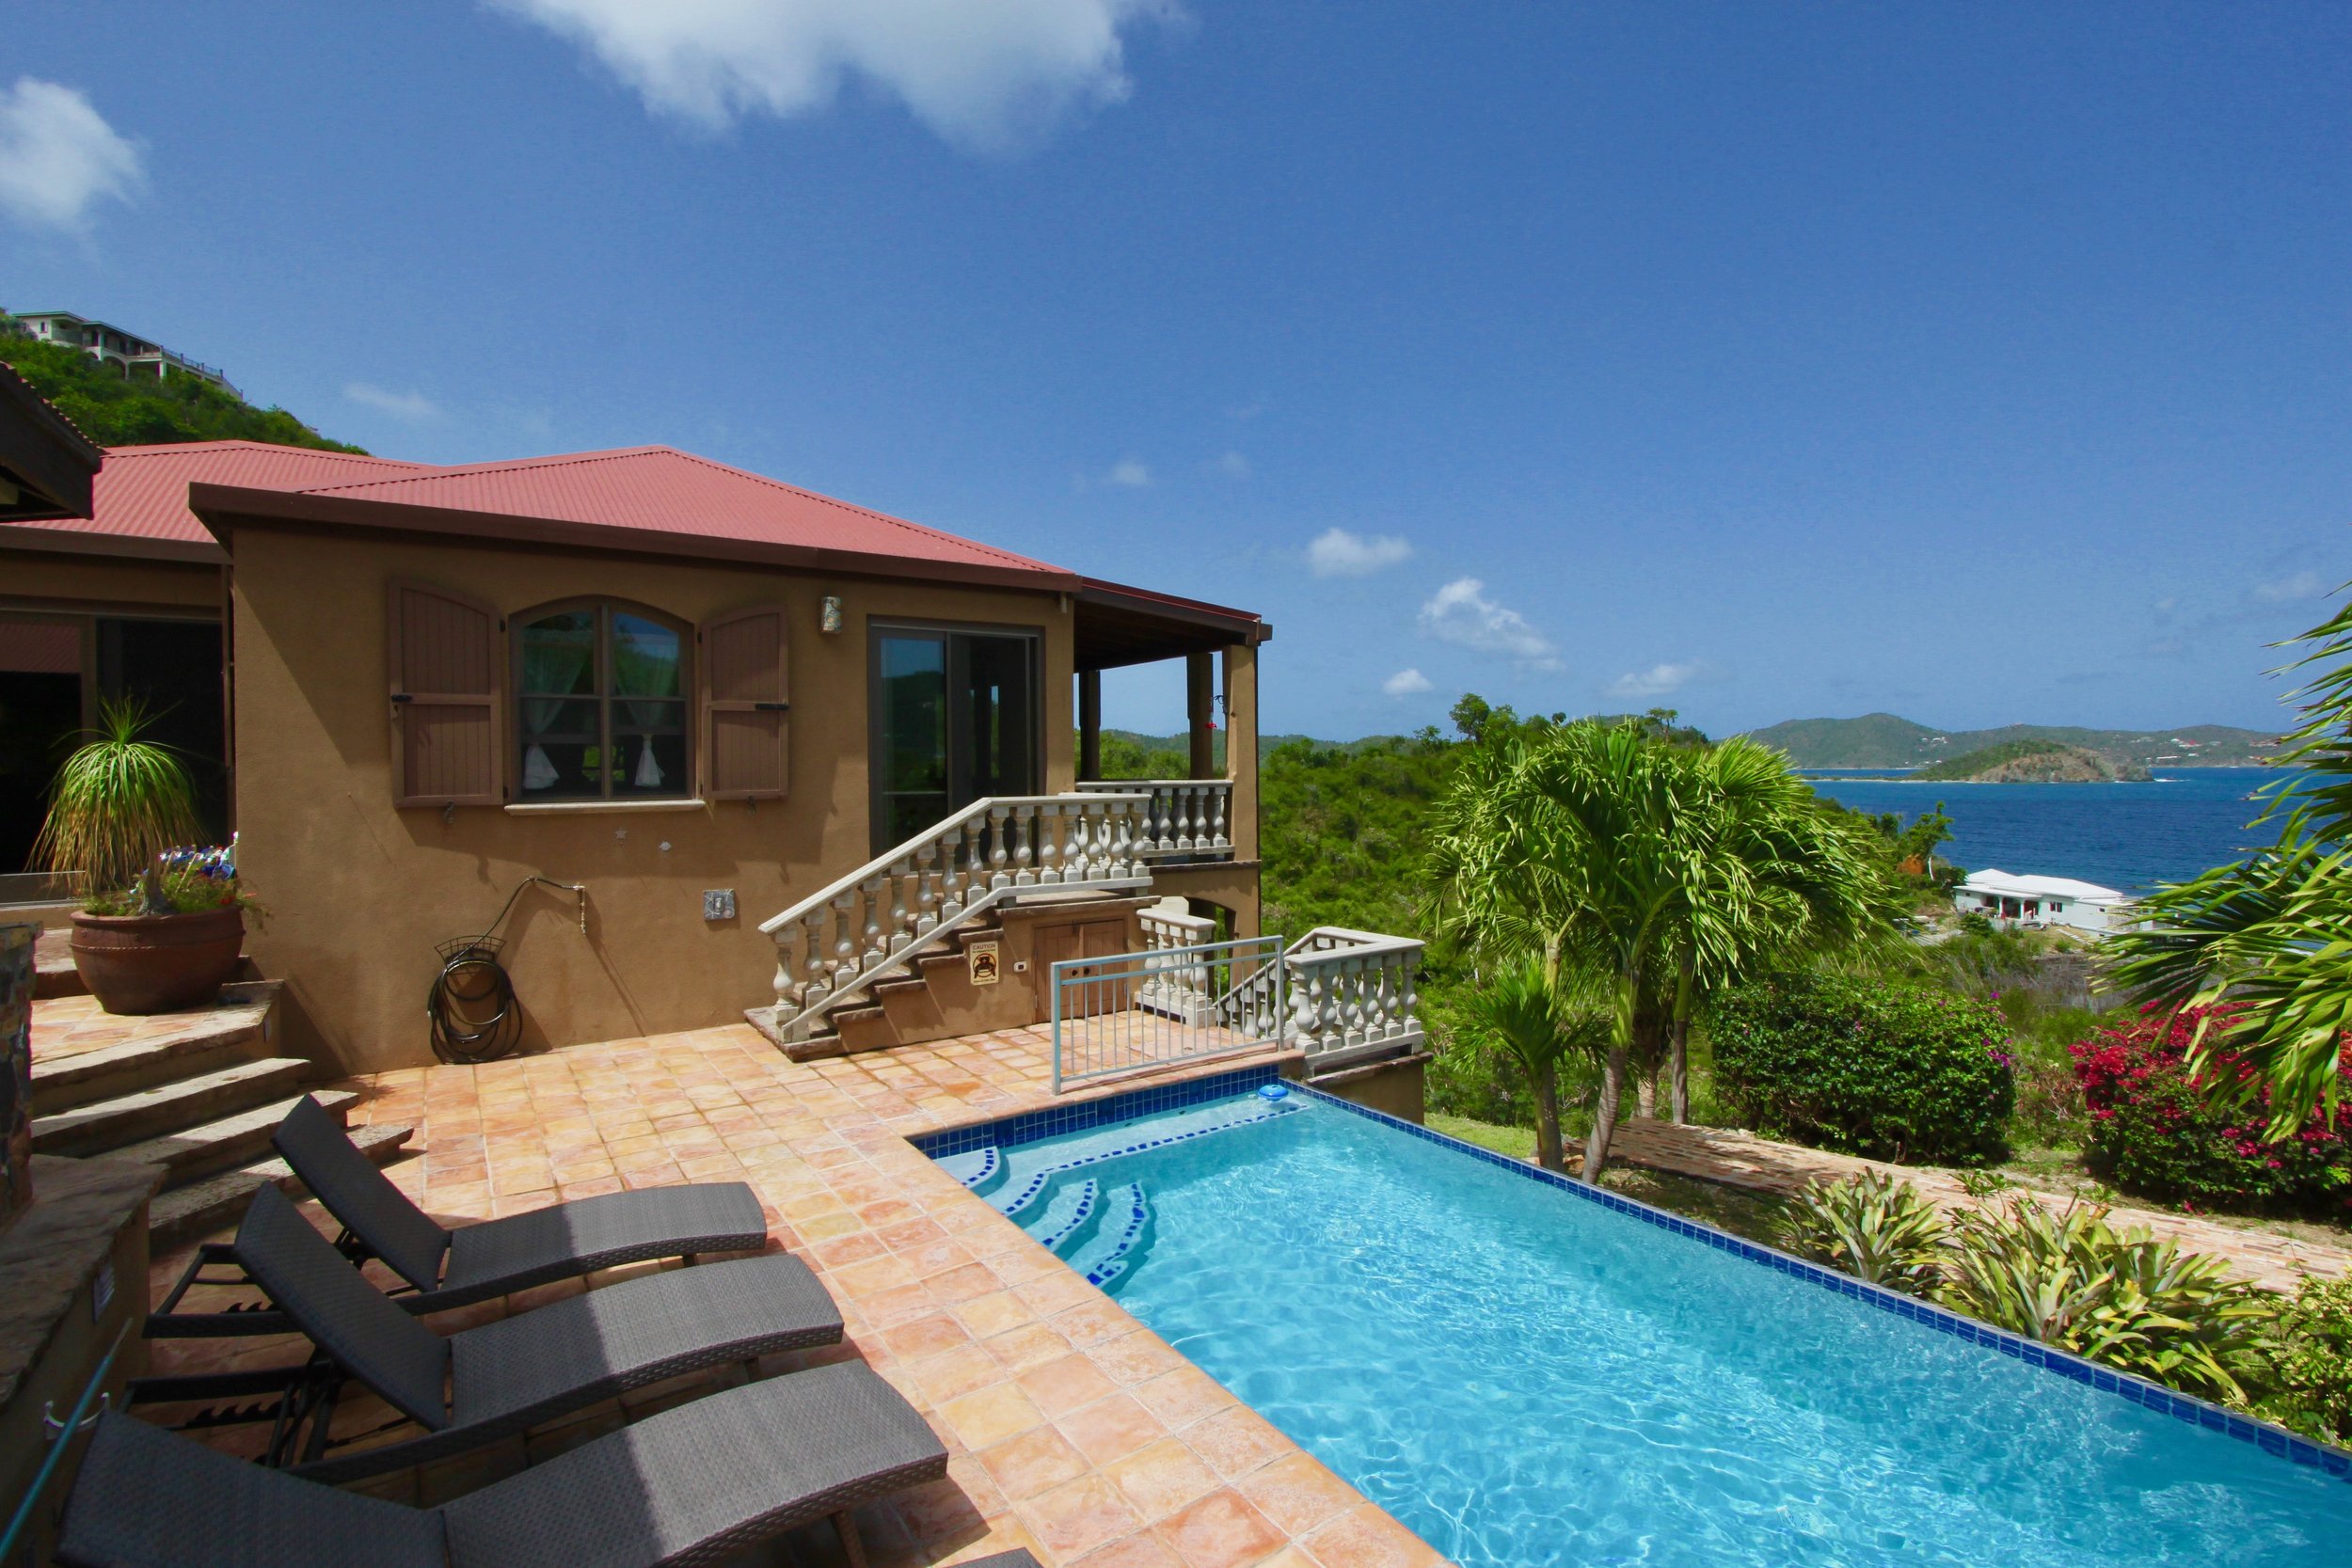 Caribbean Villa, St John Villa, Virgin Islands Villa 24 (Copy)